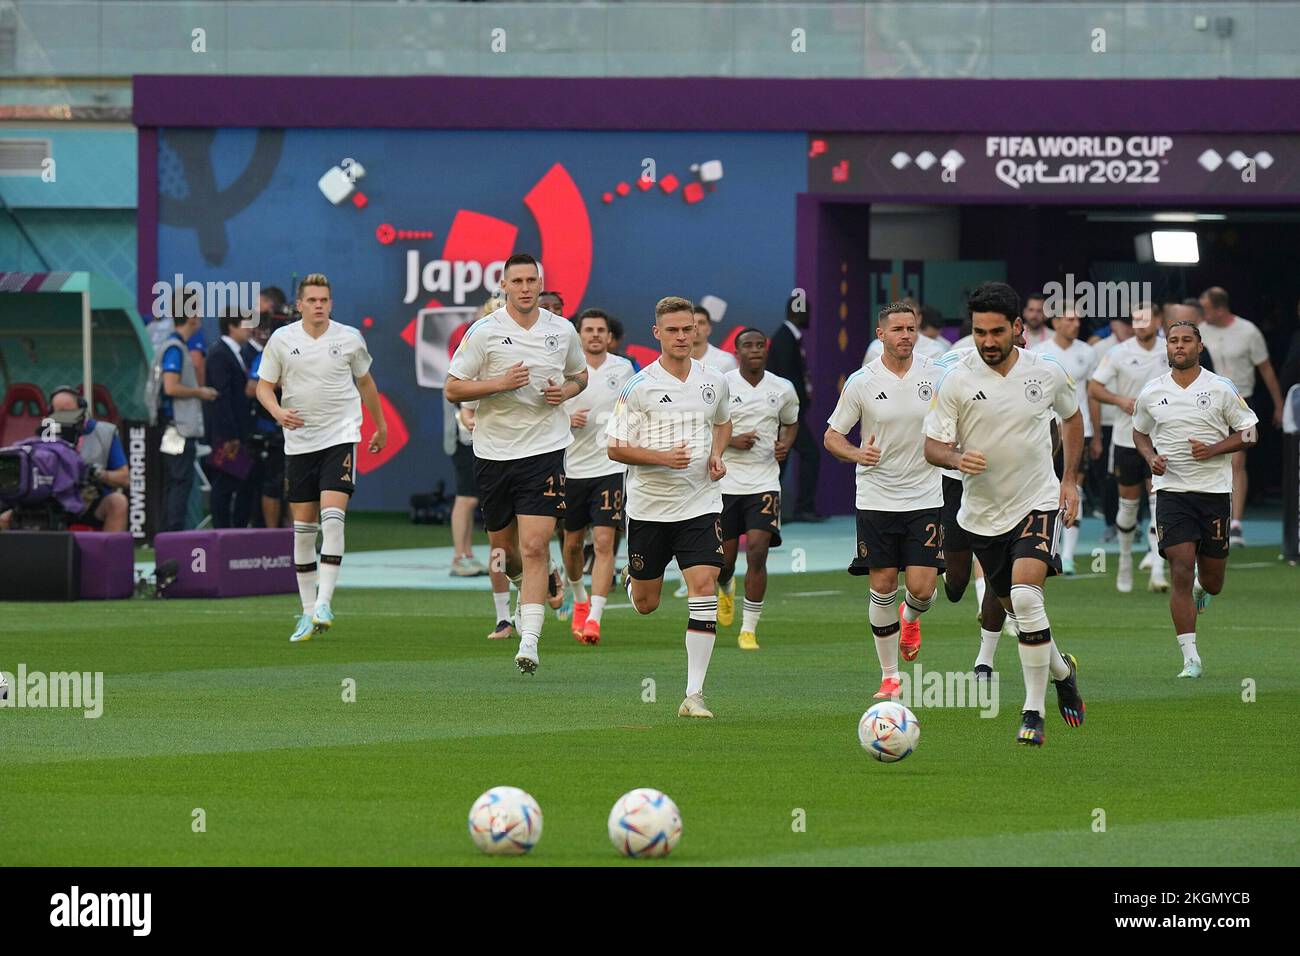 23 novembre 2022, Stade international de Khalifa, Doha, QAT, Coupe du monde FIFA 2022, Groupe E, Allemagne contre Japon, dans la photo l'équipe allemande s'échauffe, les couleurs d'un arc-en-ciel sont sur le maillot. Banque D'Images